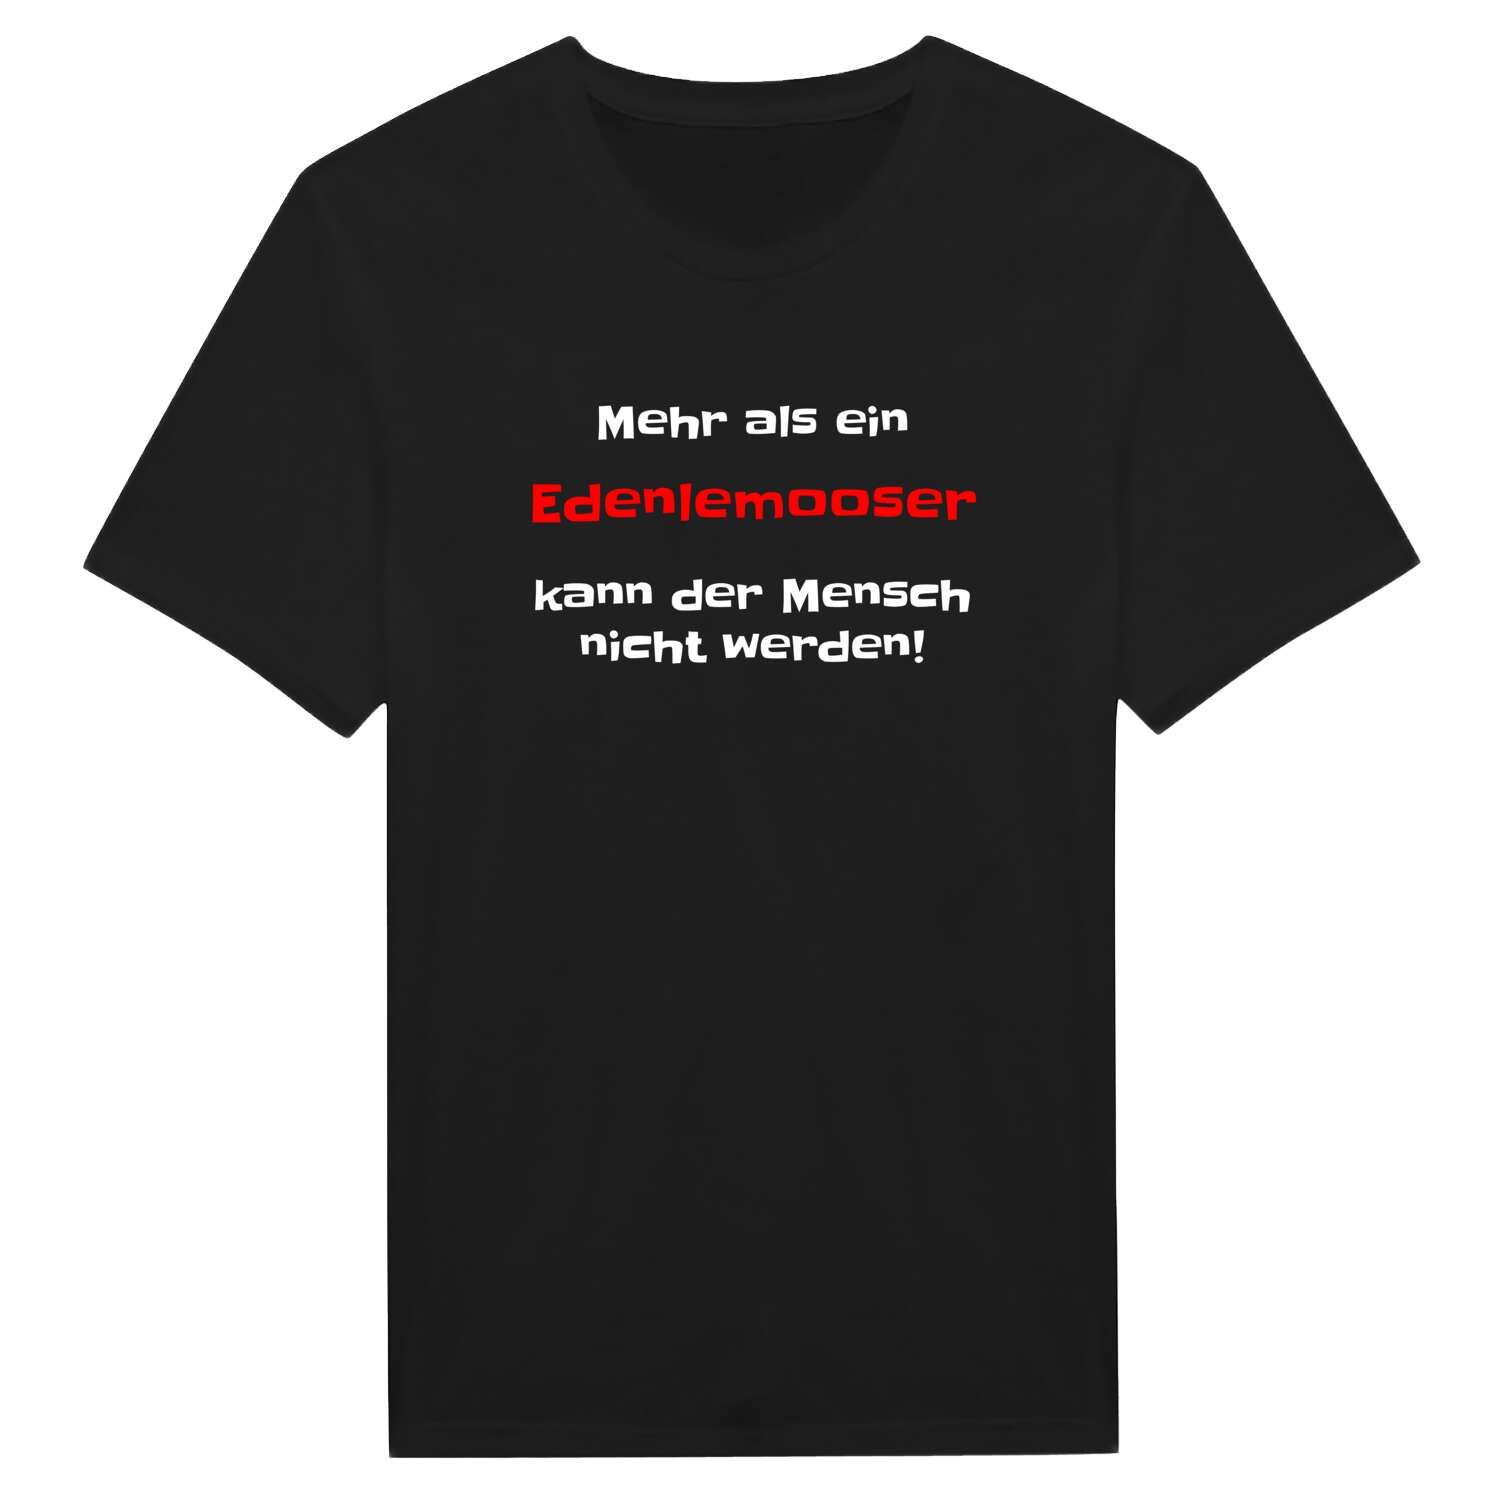 Edenlemoos T-Shirt »Mehr als ein«